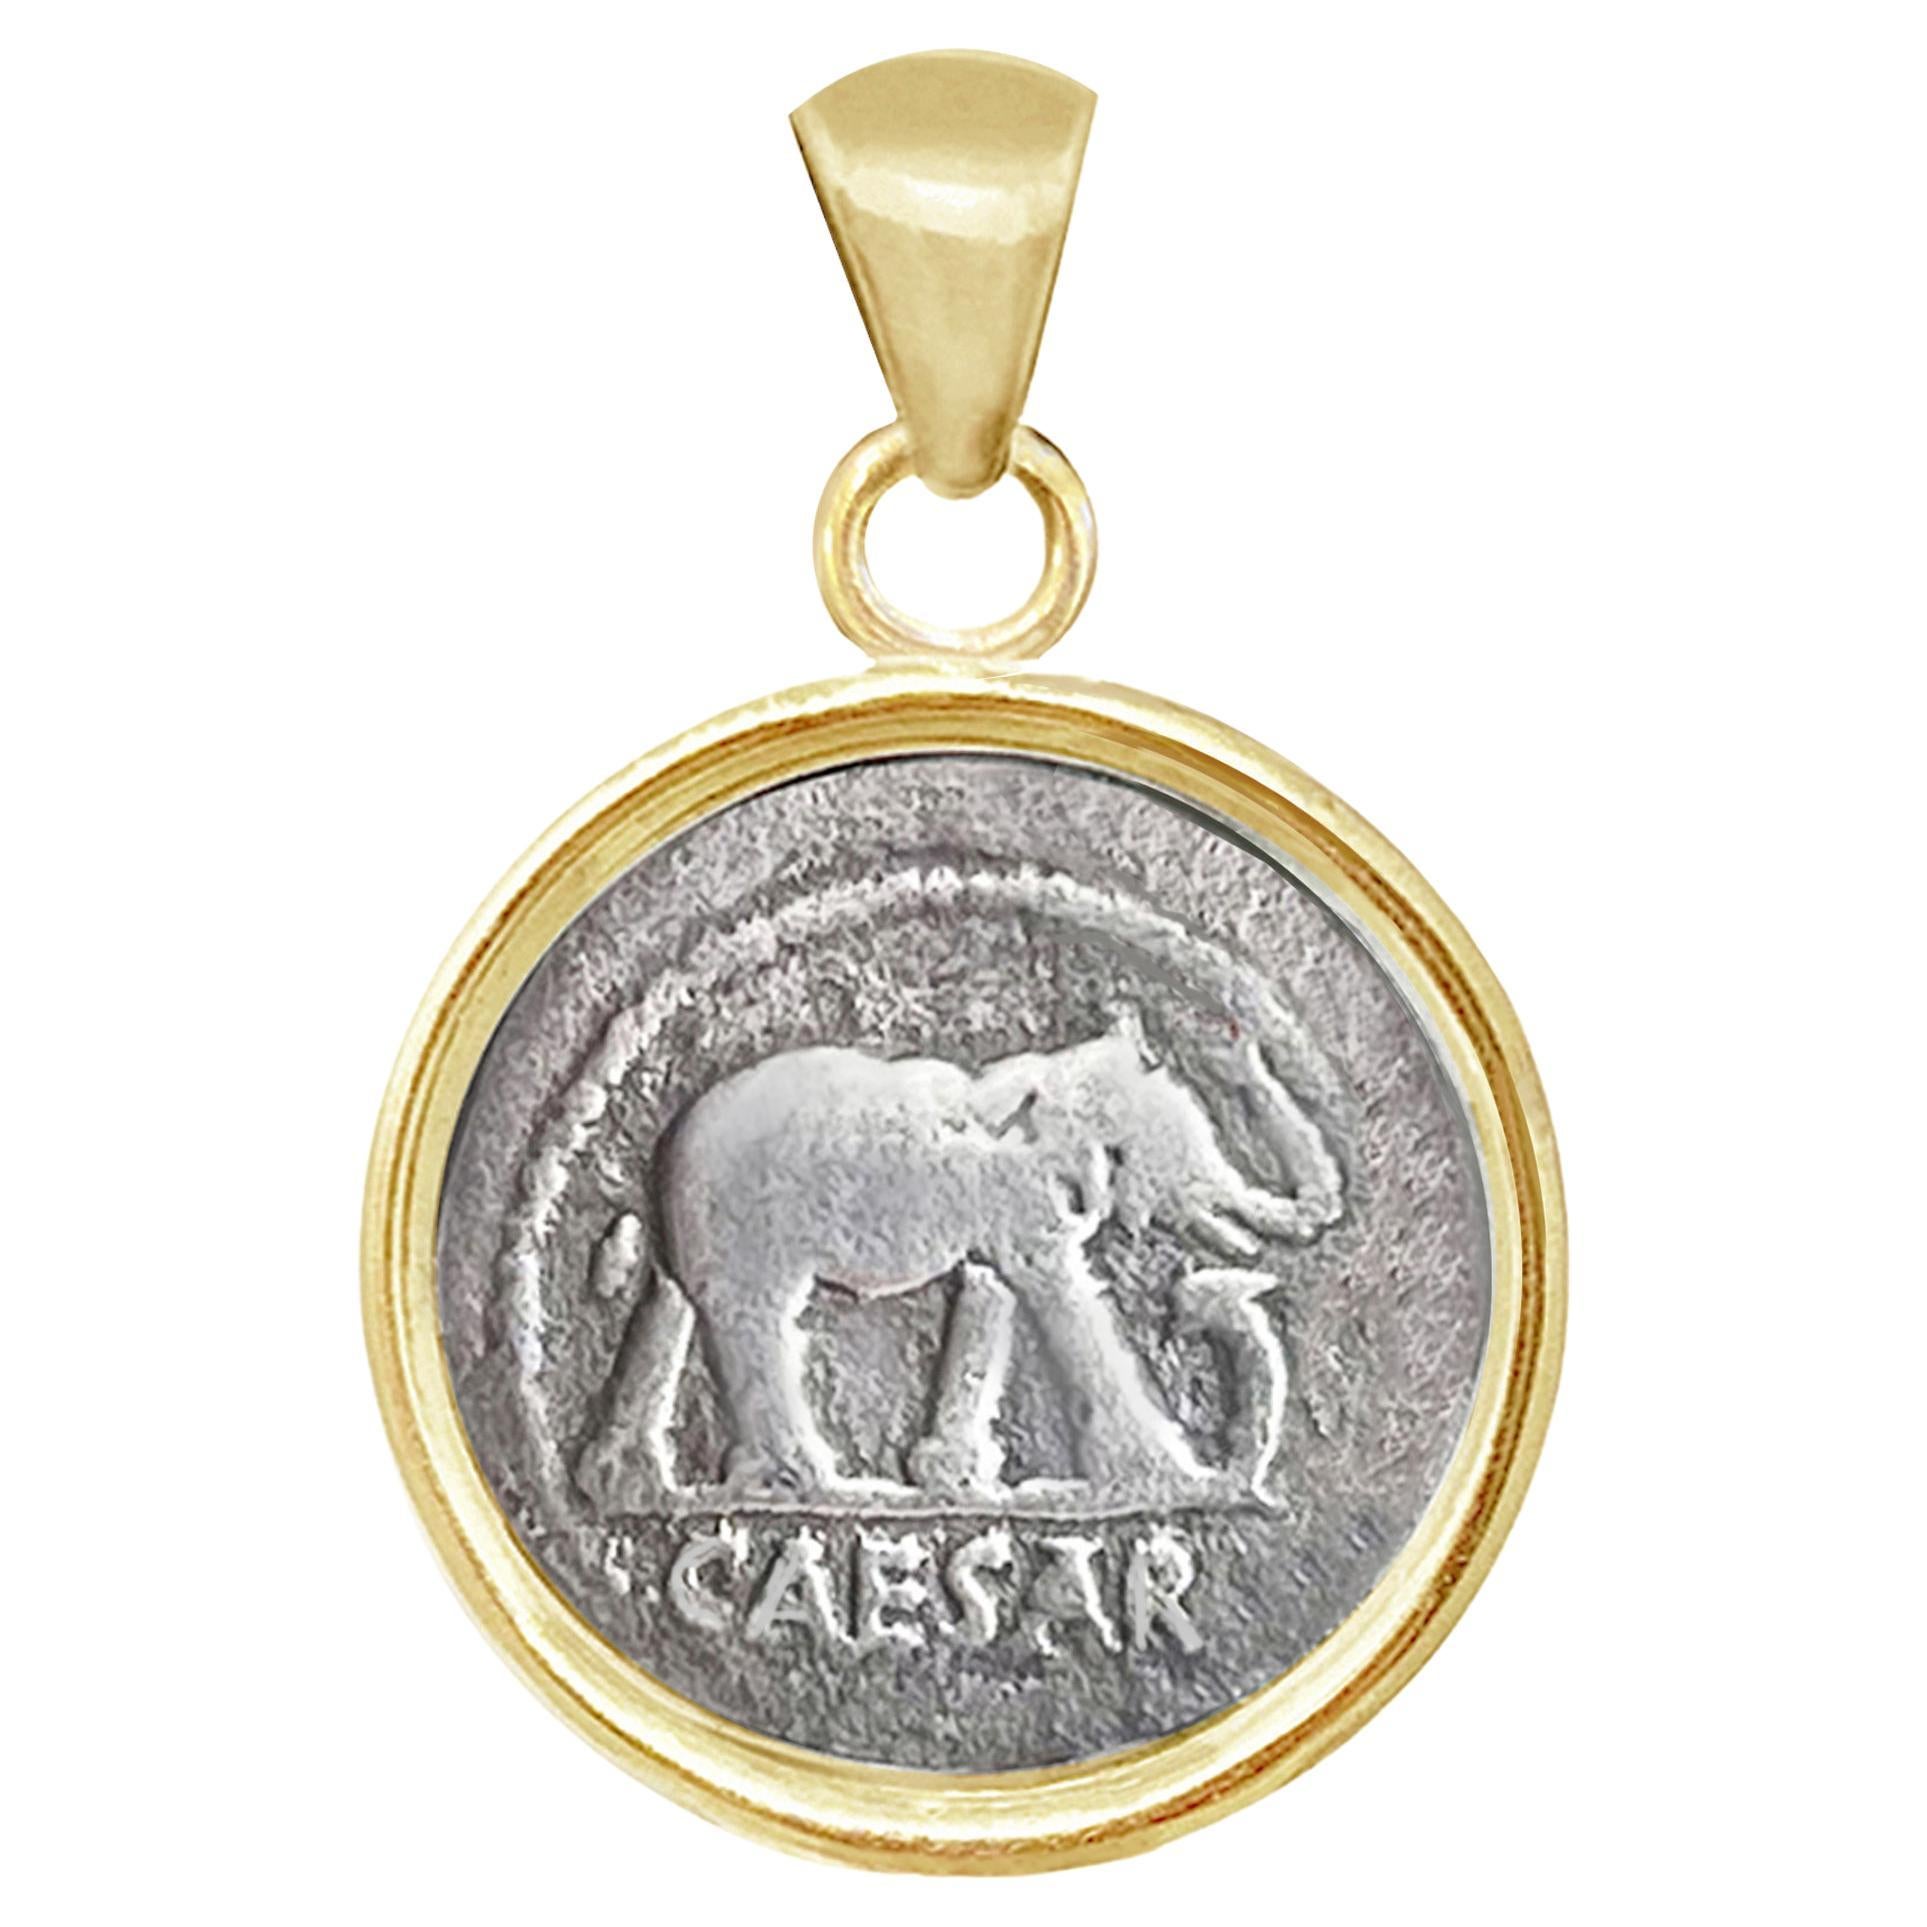 Ce pendentif en or 18 carats est serti d'une authentique pièce de monnaie romaine datant de 49 av. C. qui représente un éléphant piétinant un serpent (symbole de la victoire sur le mal). La pièce a été frappée par l'atelier de frappe militaire qui